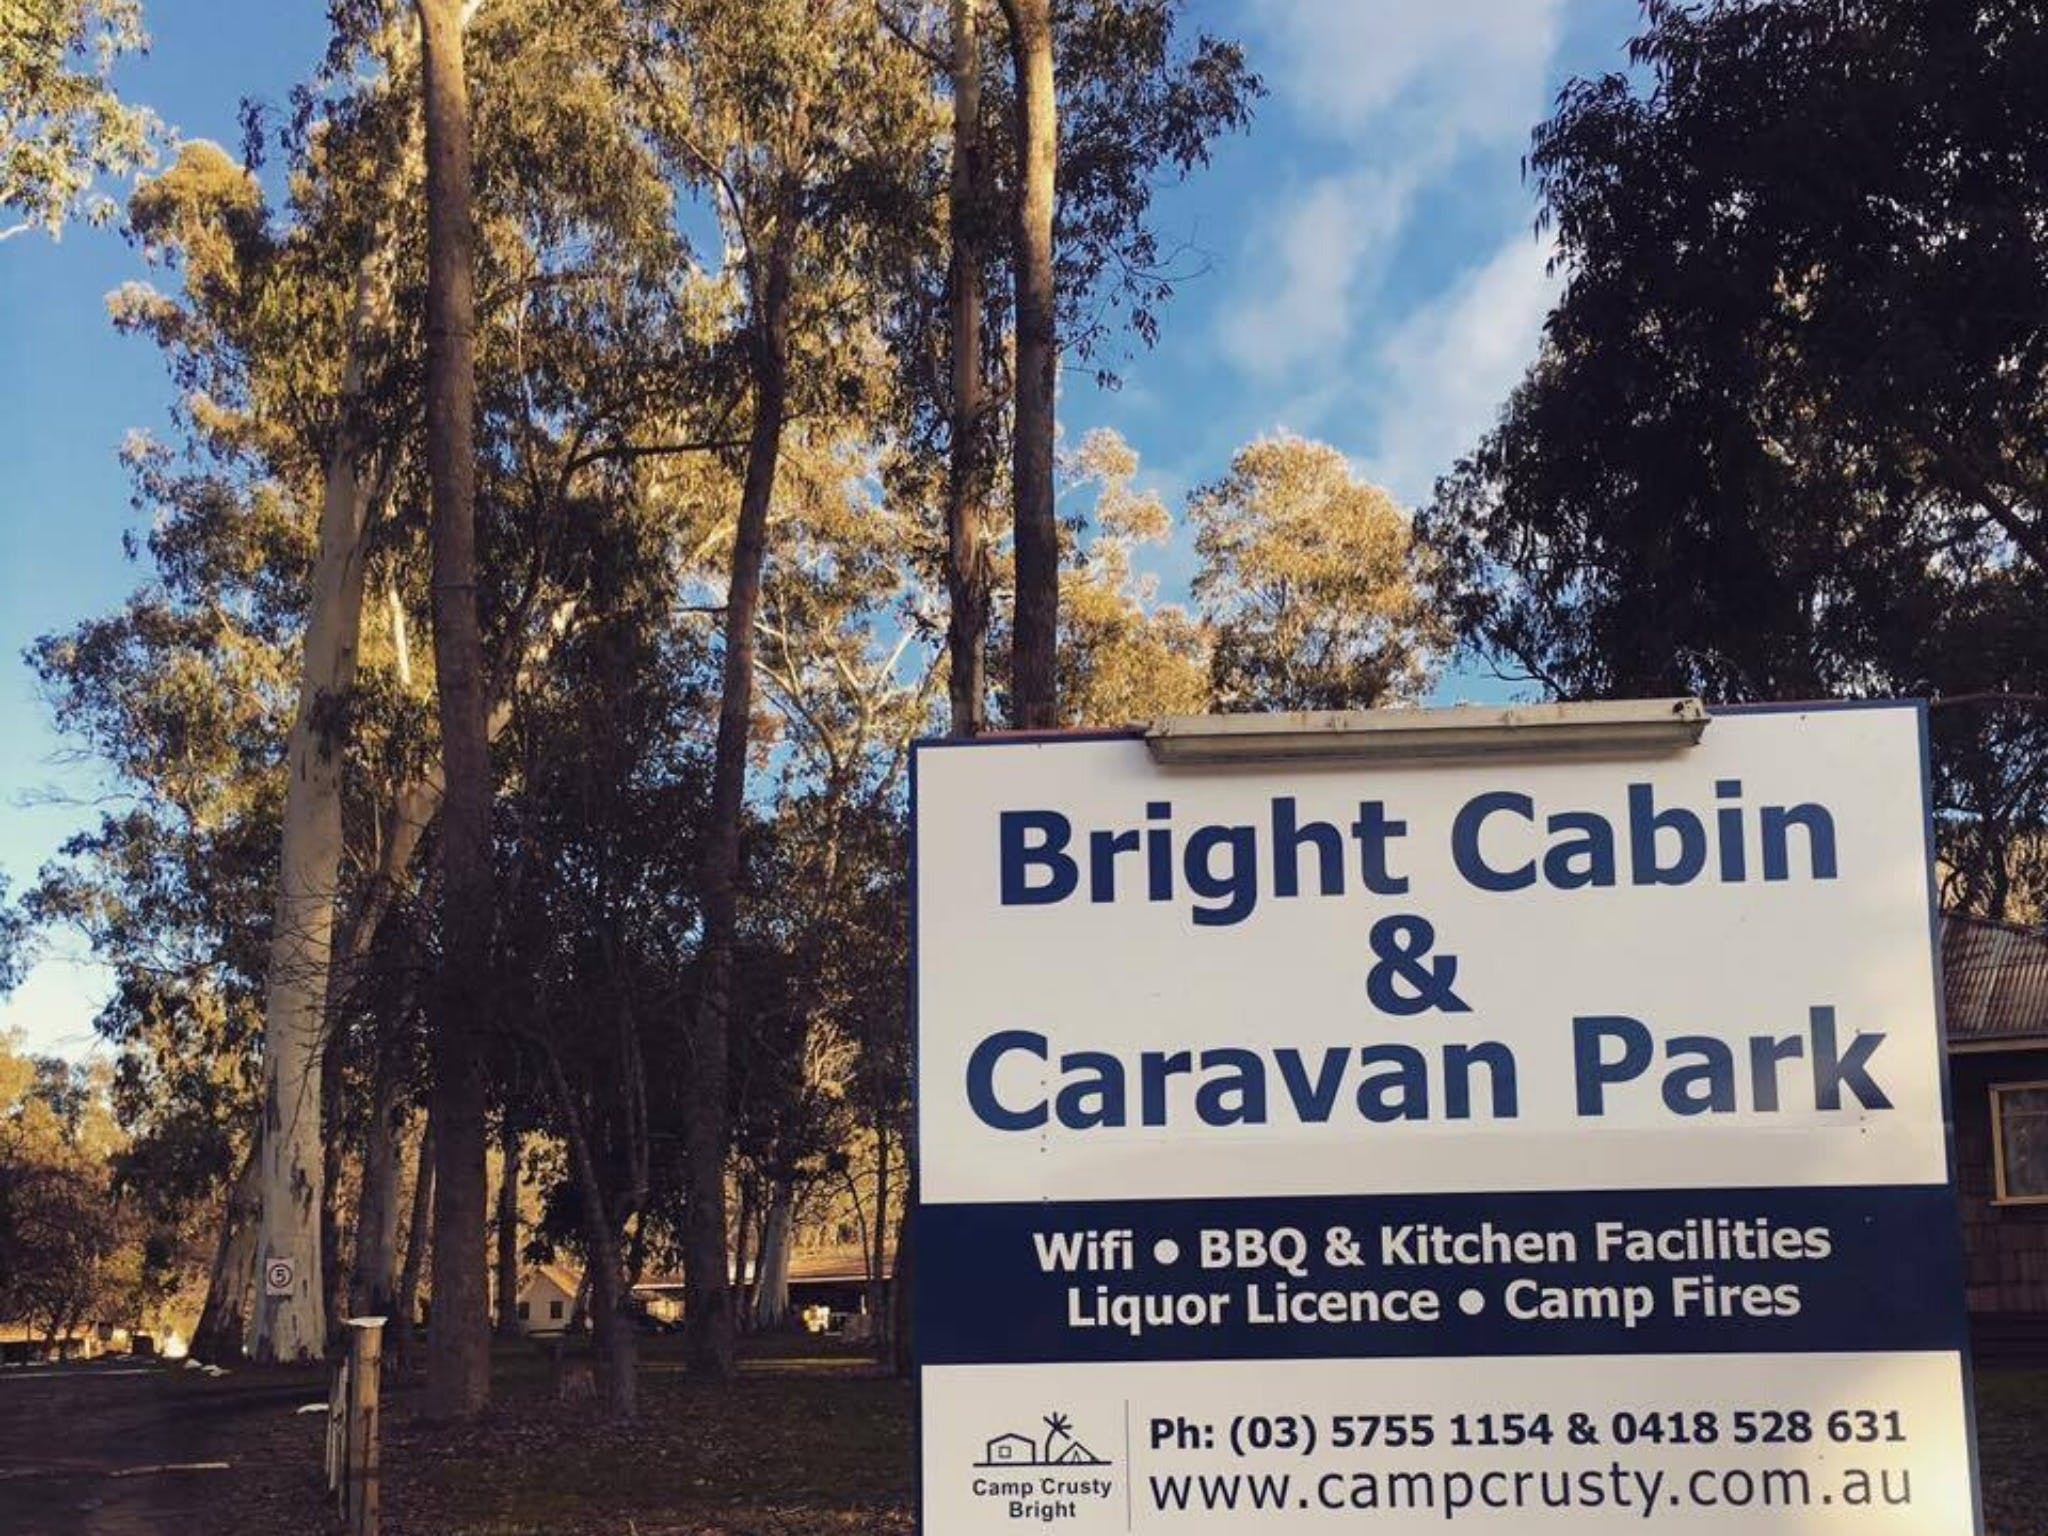 Bright Cabin & Caravan Park - Bright